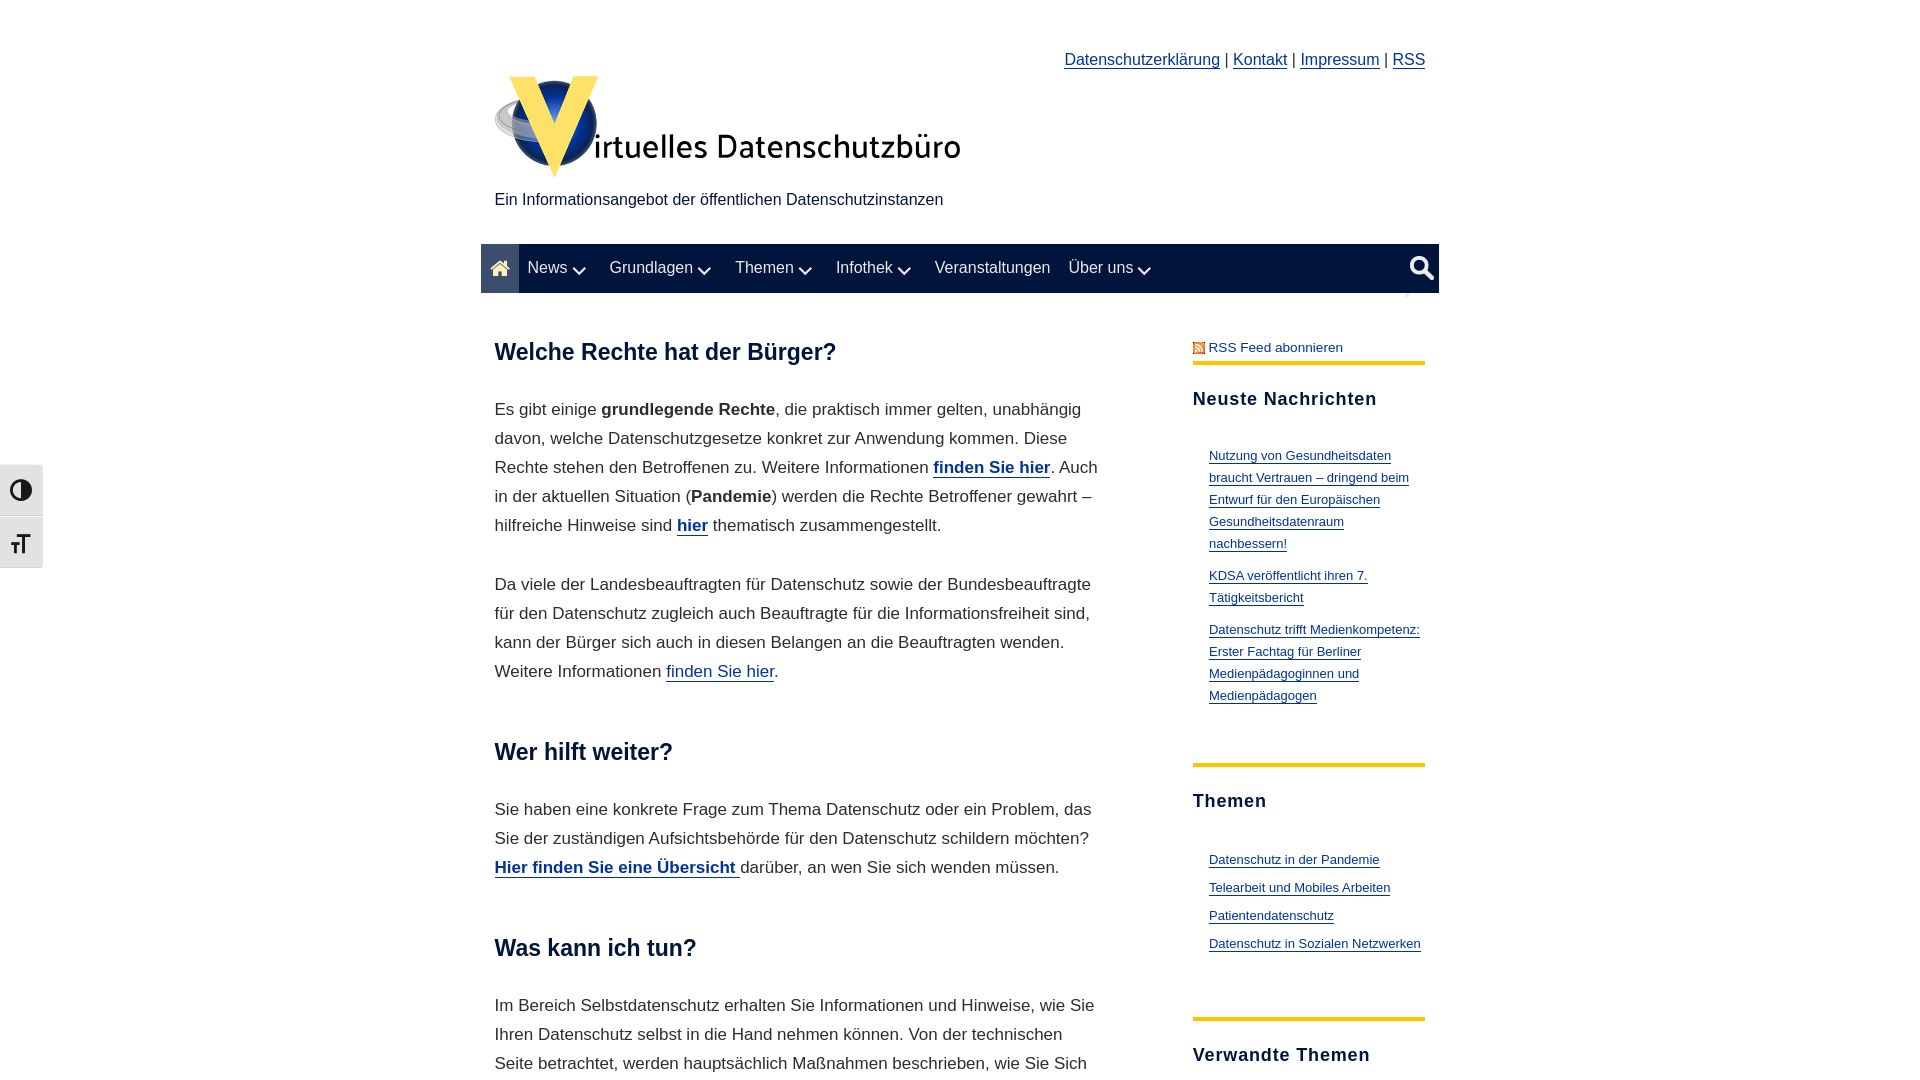 Stato del sito web datenschutz.de è   ONLINE